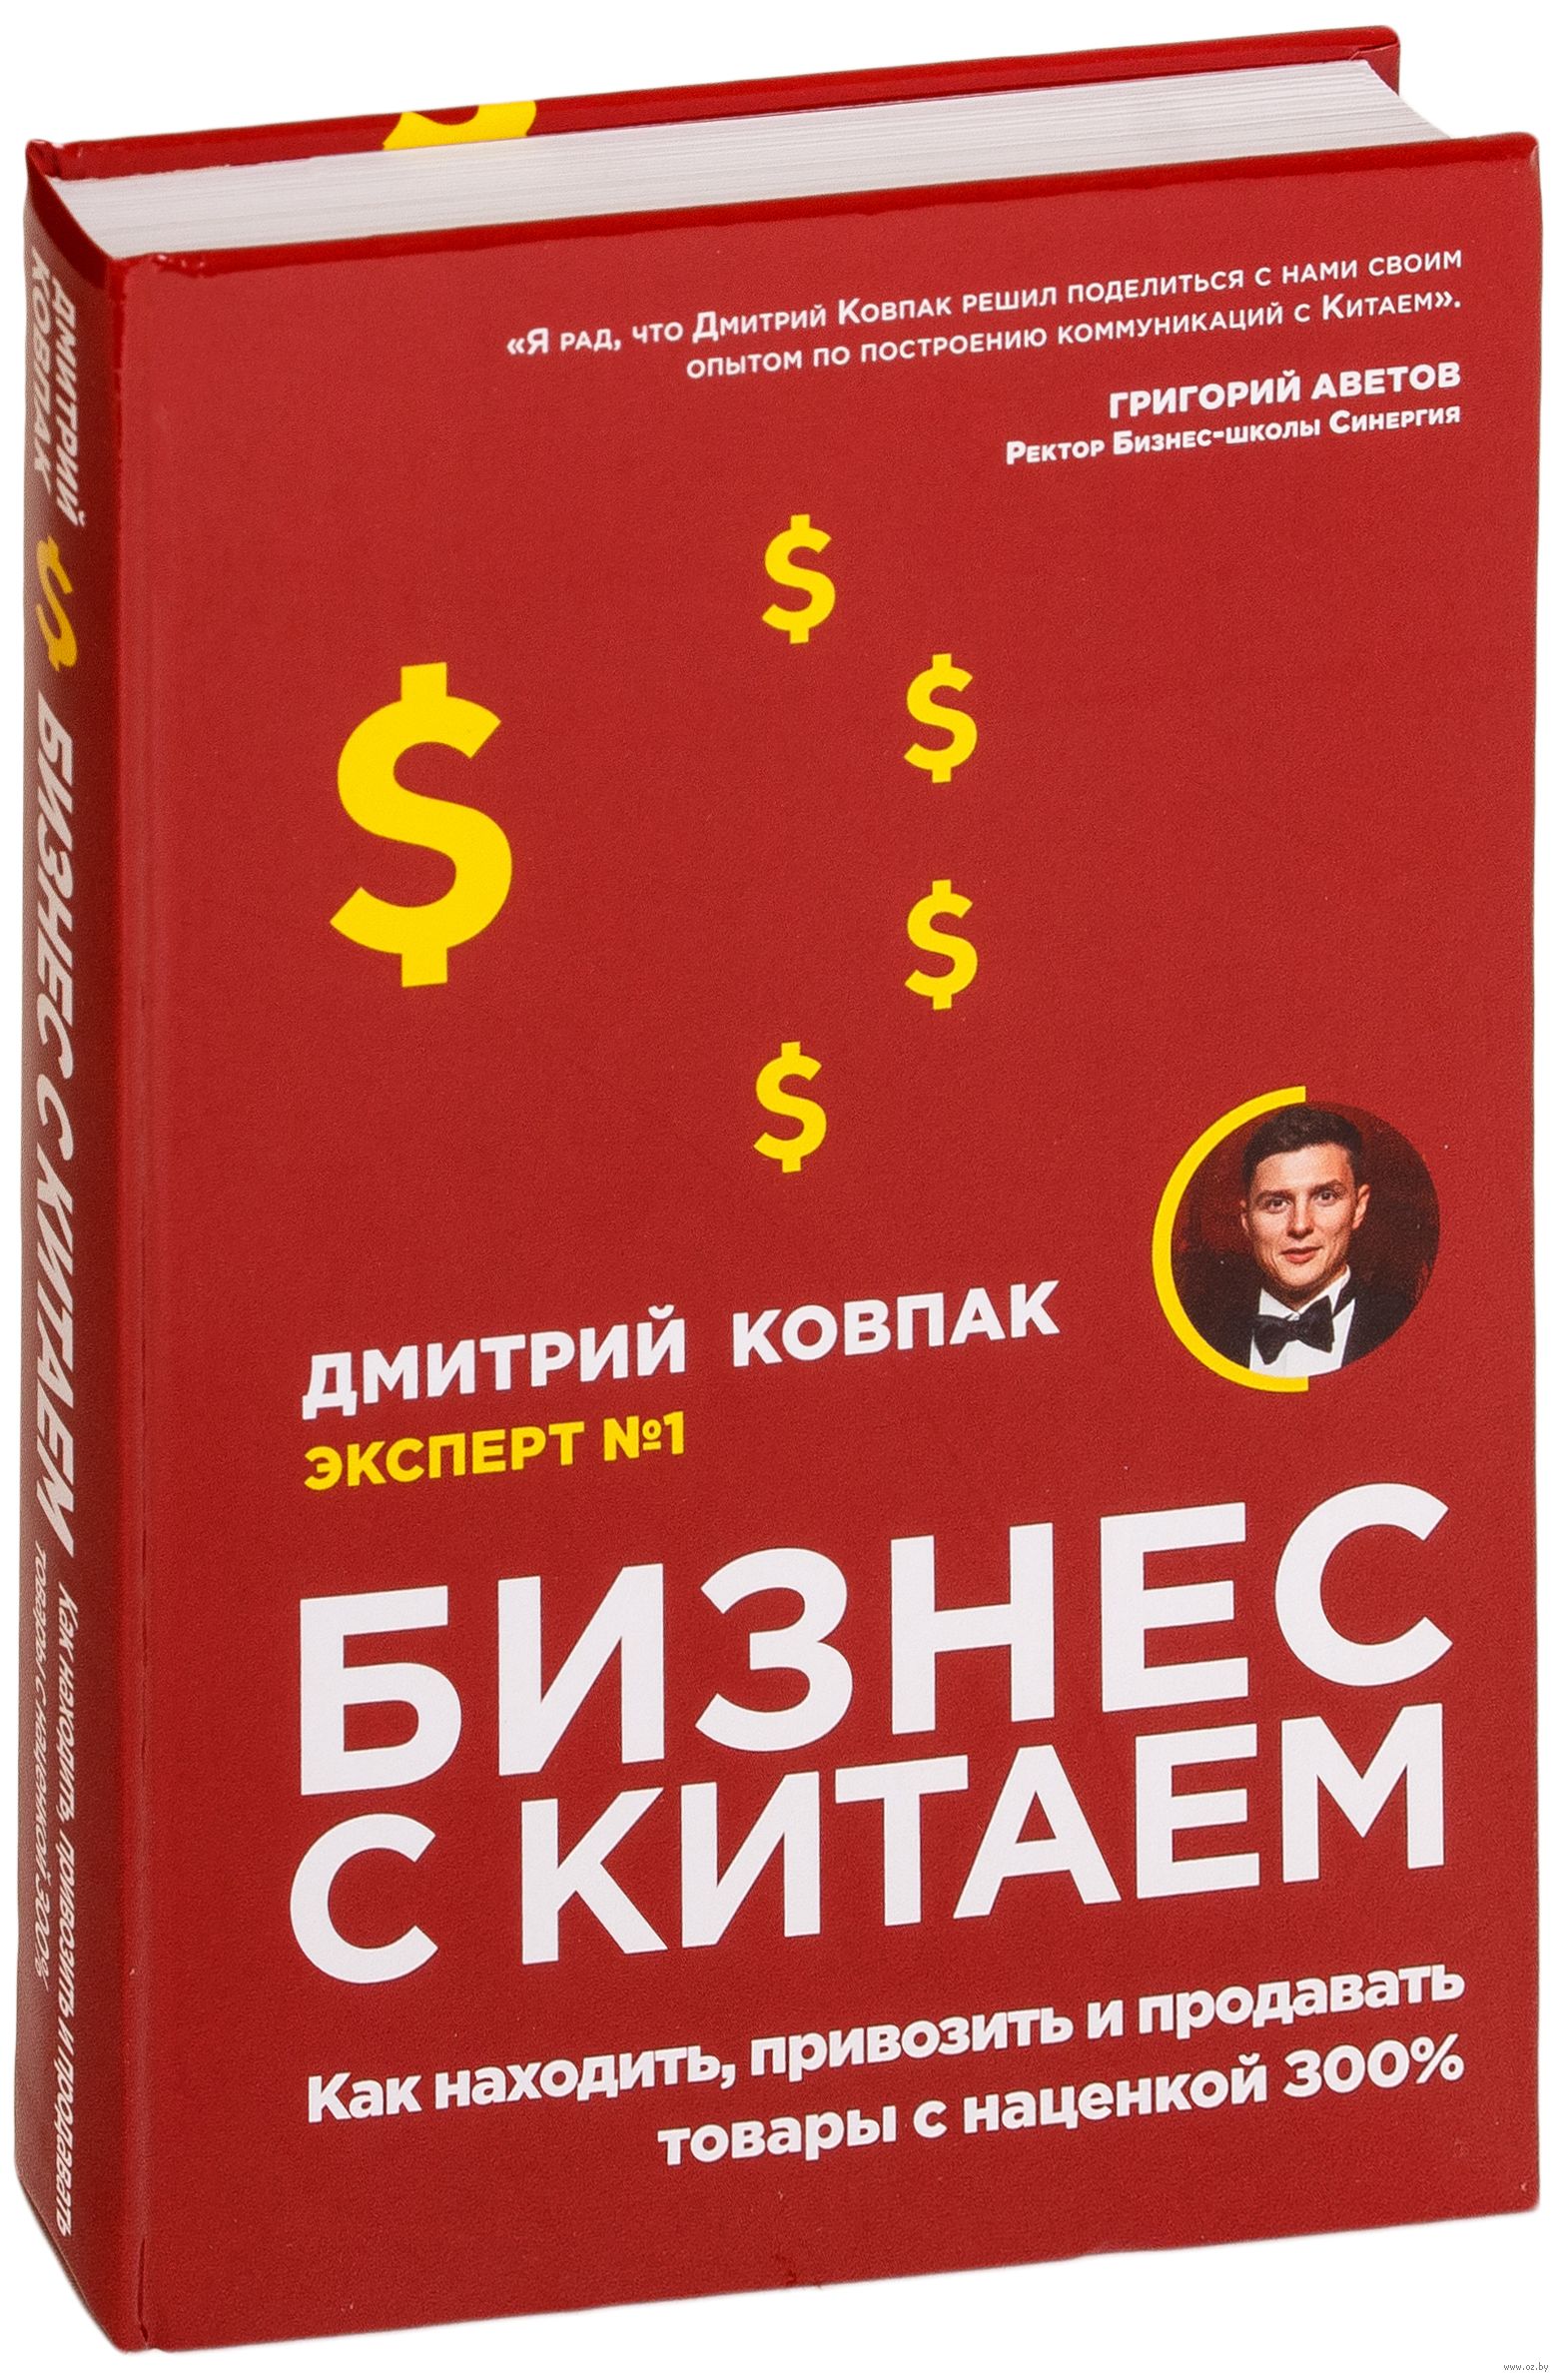 Бизнес с Китаем. Как находить, привозить и продавать товары с наценкой  300%» Дмитрий Ковпак - купить книгу «Бизнес с Китаем. Как находить,  привозить и продавать товары с наценкой 300%» в Минске —